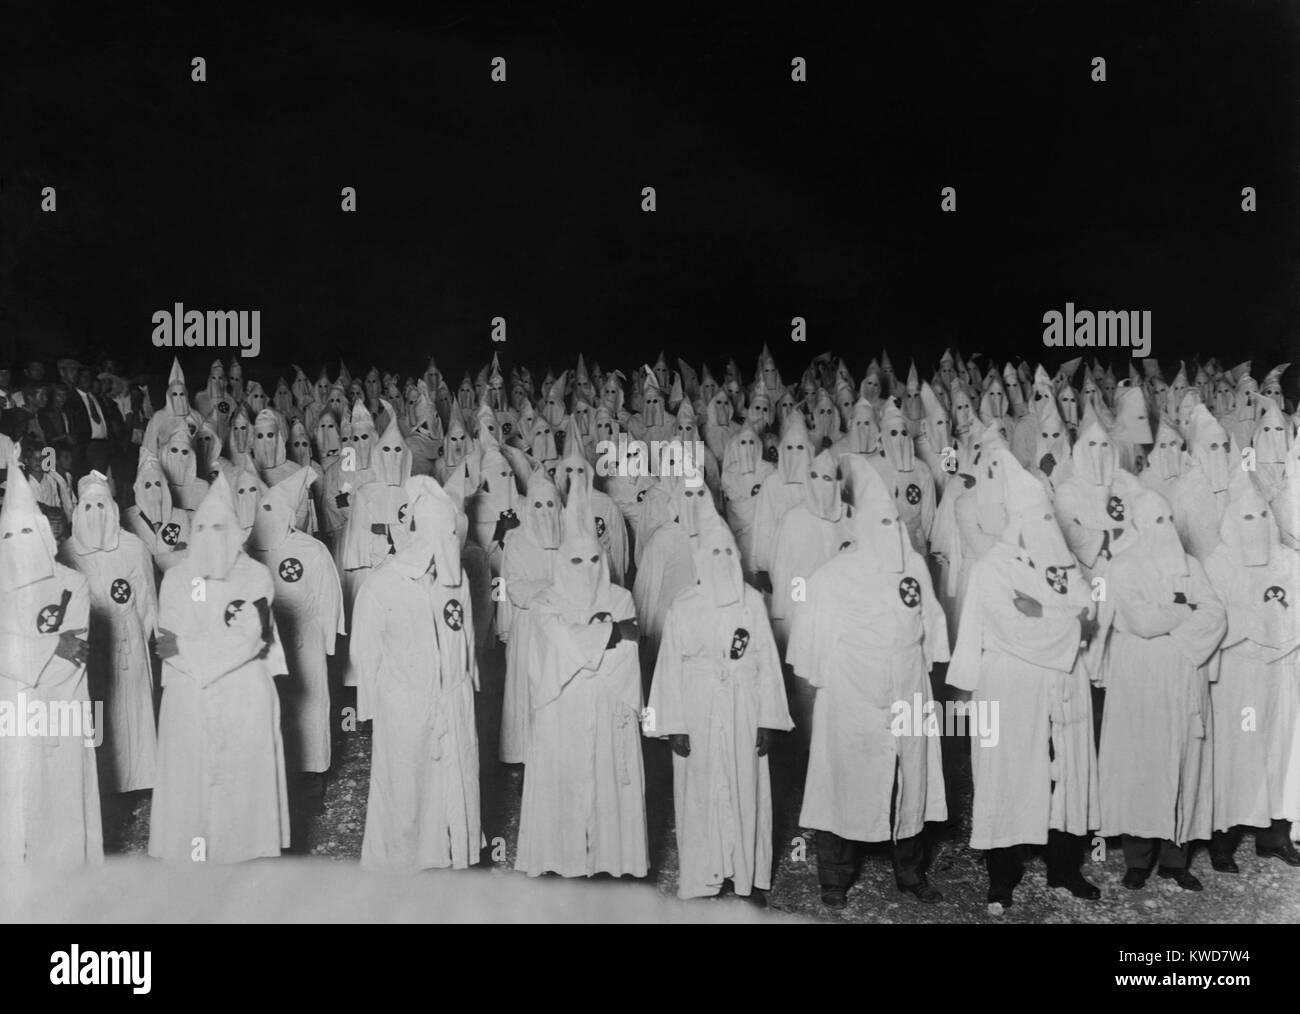 La raccolta notturna di vestita e con cappuccio del Ku Klux Klan uomini nel 1921-1922. Foto da Foto Nazionale Società e probabilmente è stata adottata entro 100 miglia di Washington D.C. (BSLOC 2015 16 172) Foto Stock